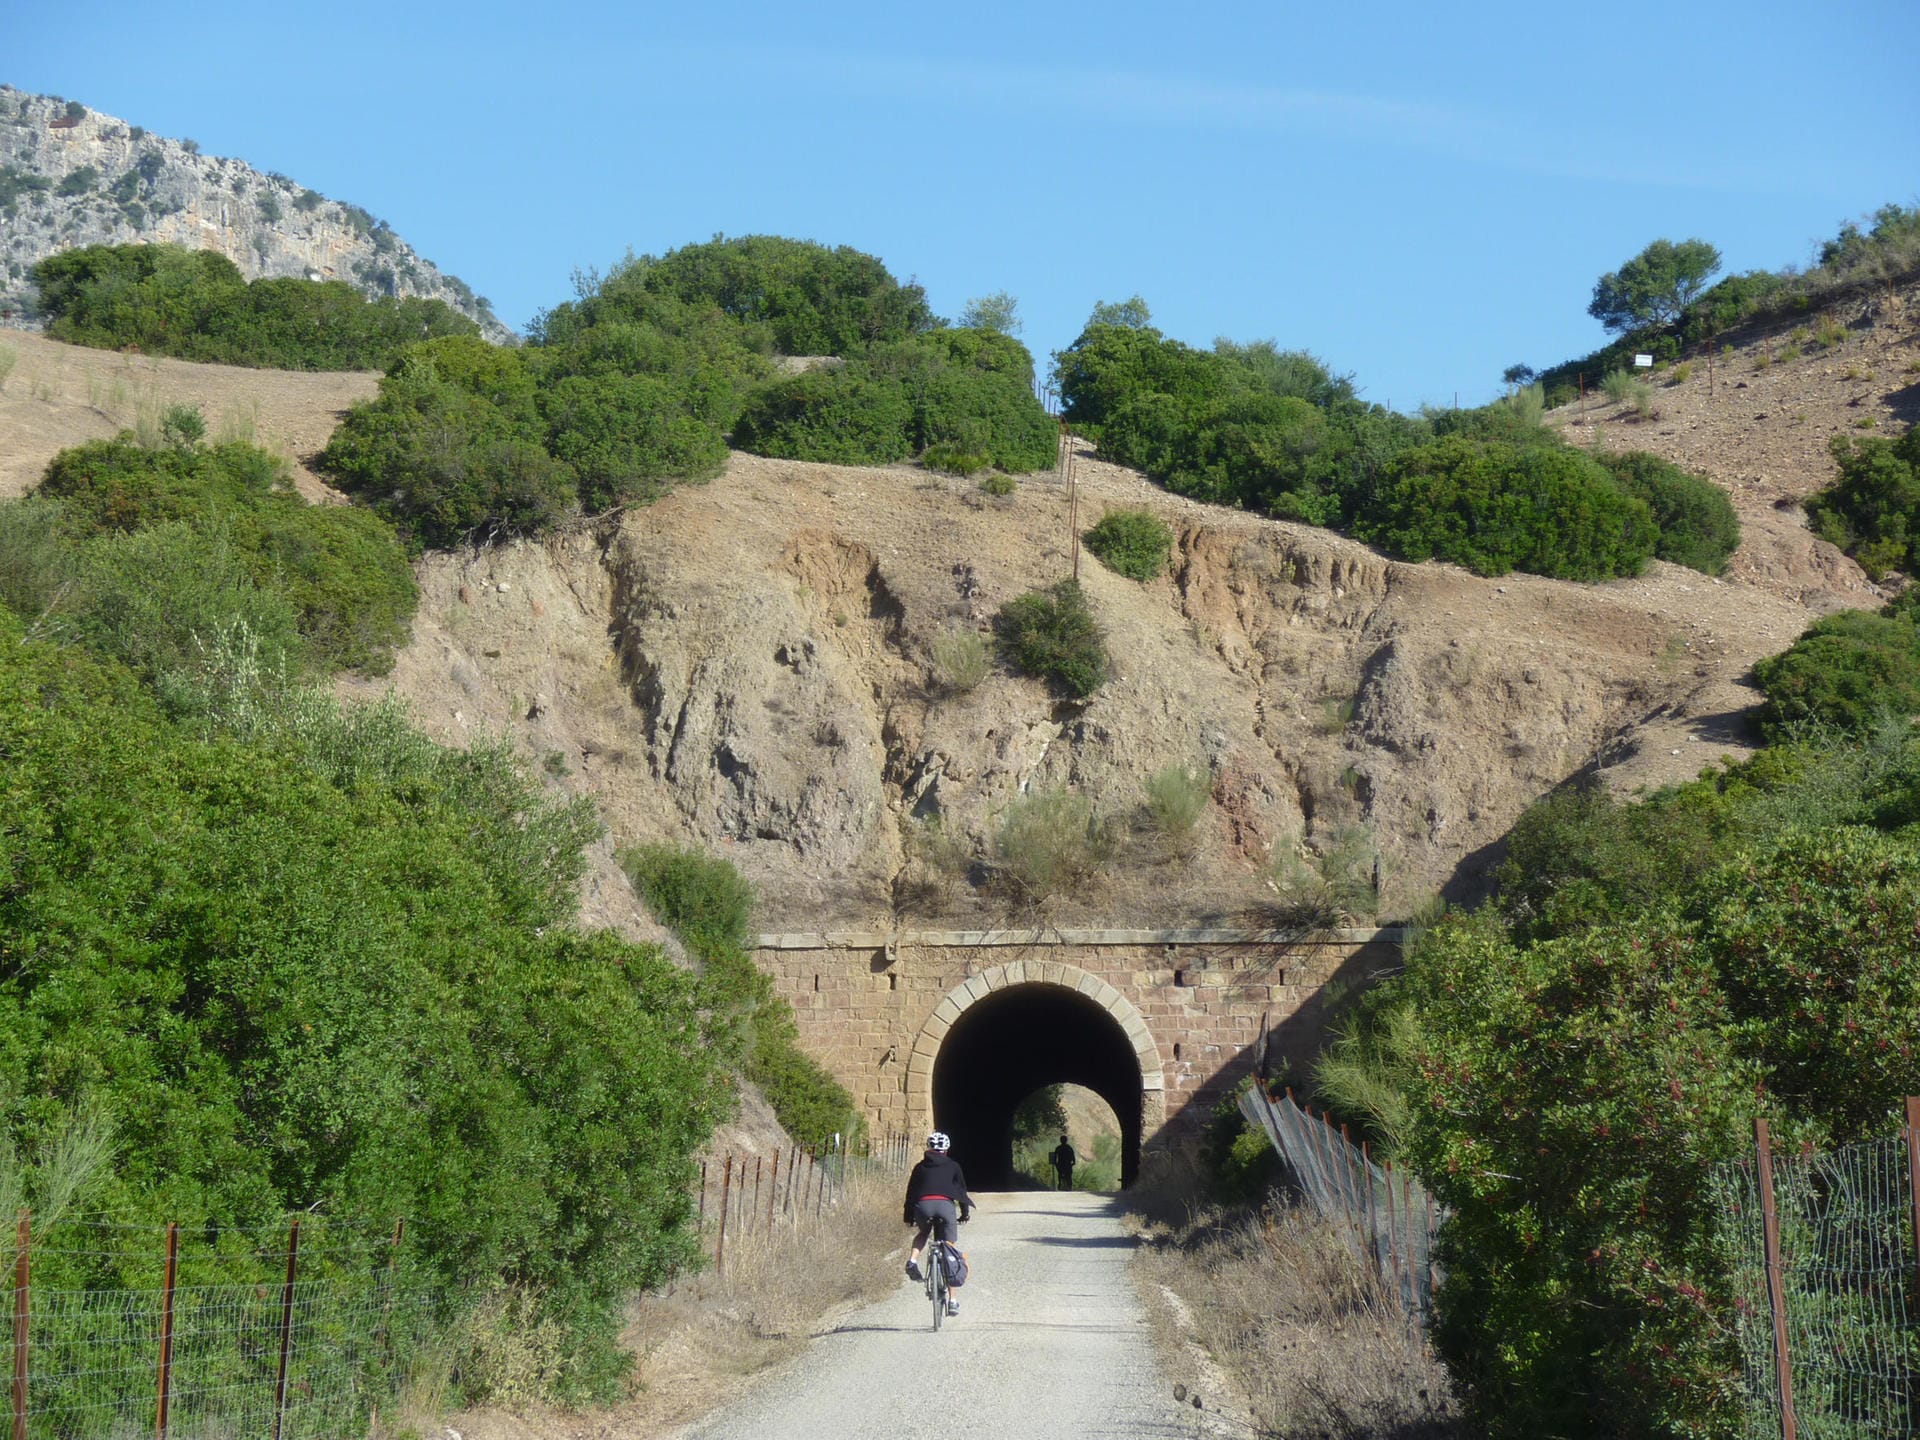 Via Verde de la Sierra in Andalusien: In Spanien kann man mit dem Rad auf stillgelegten Bahntrassen fahren.